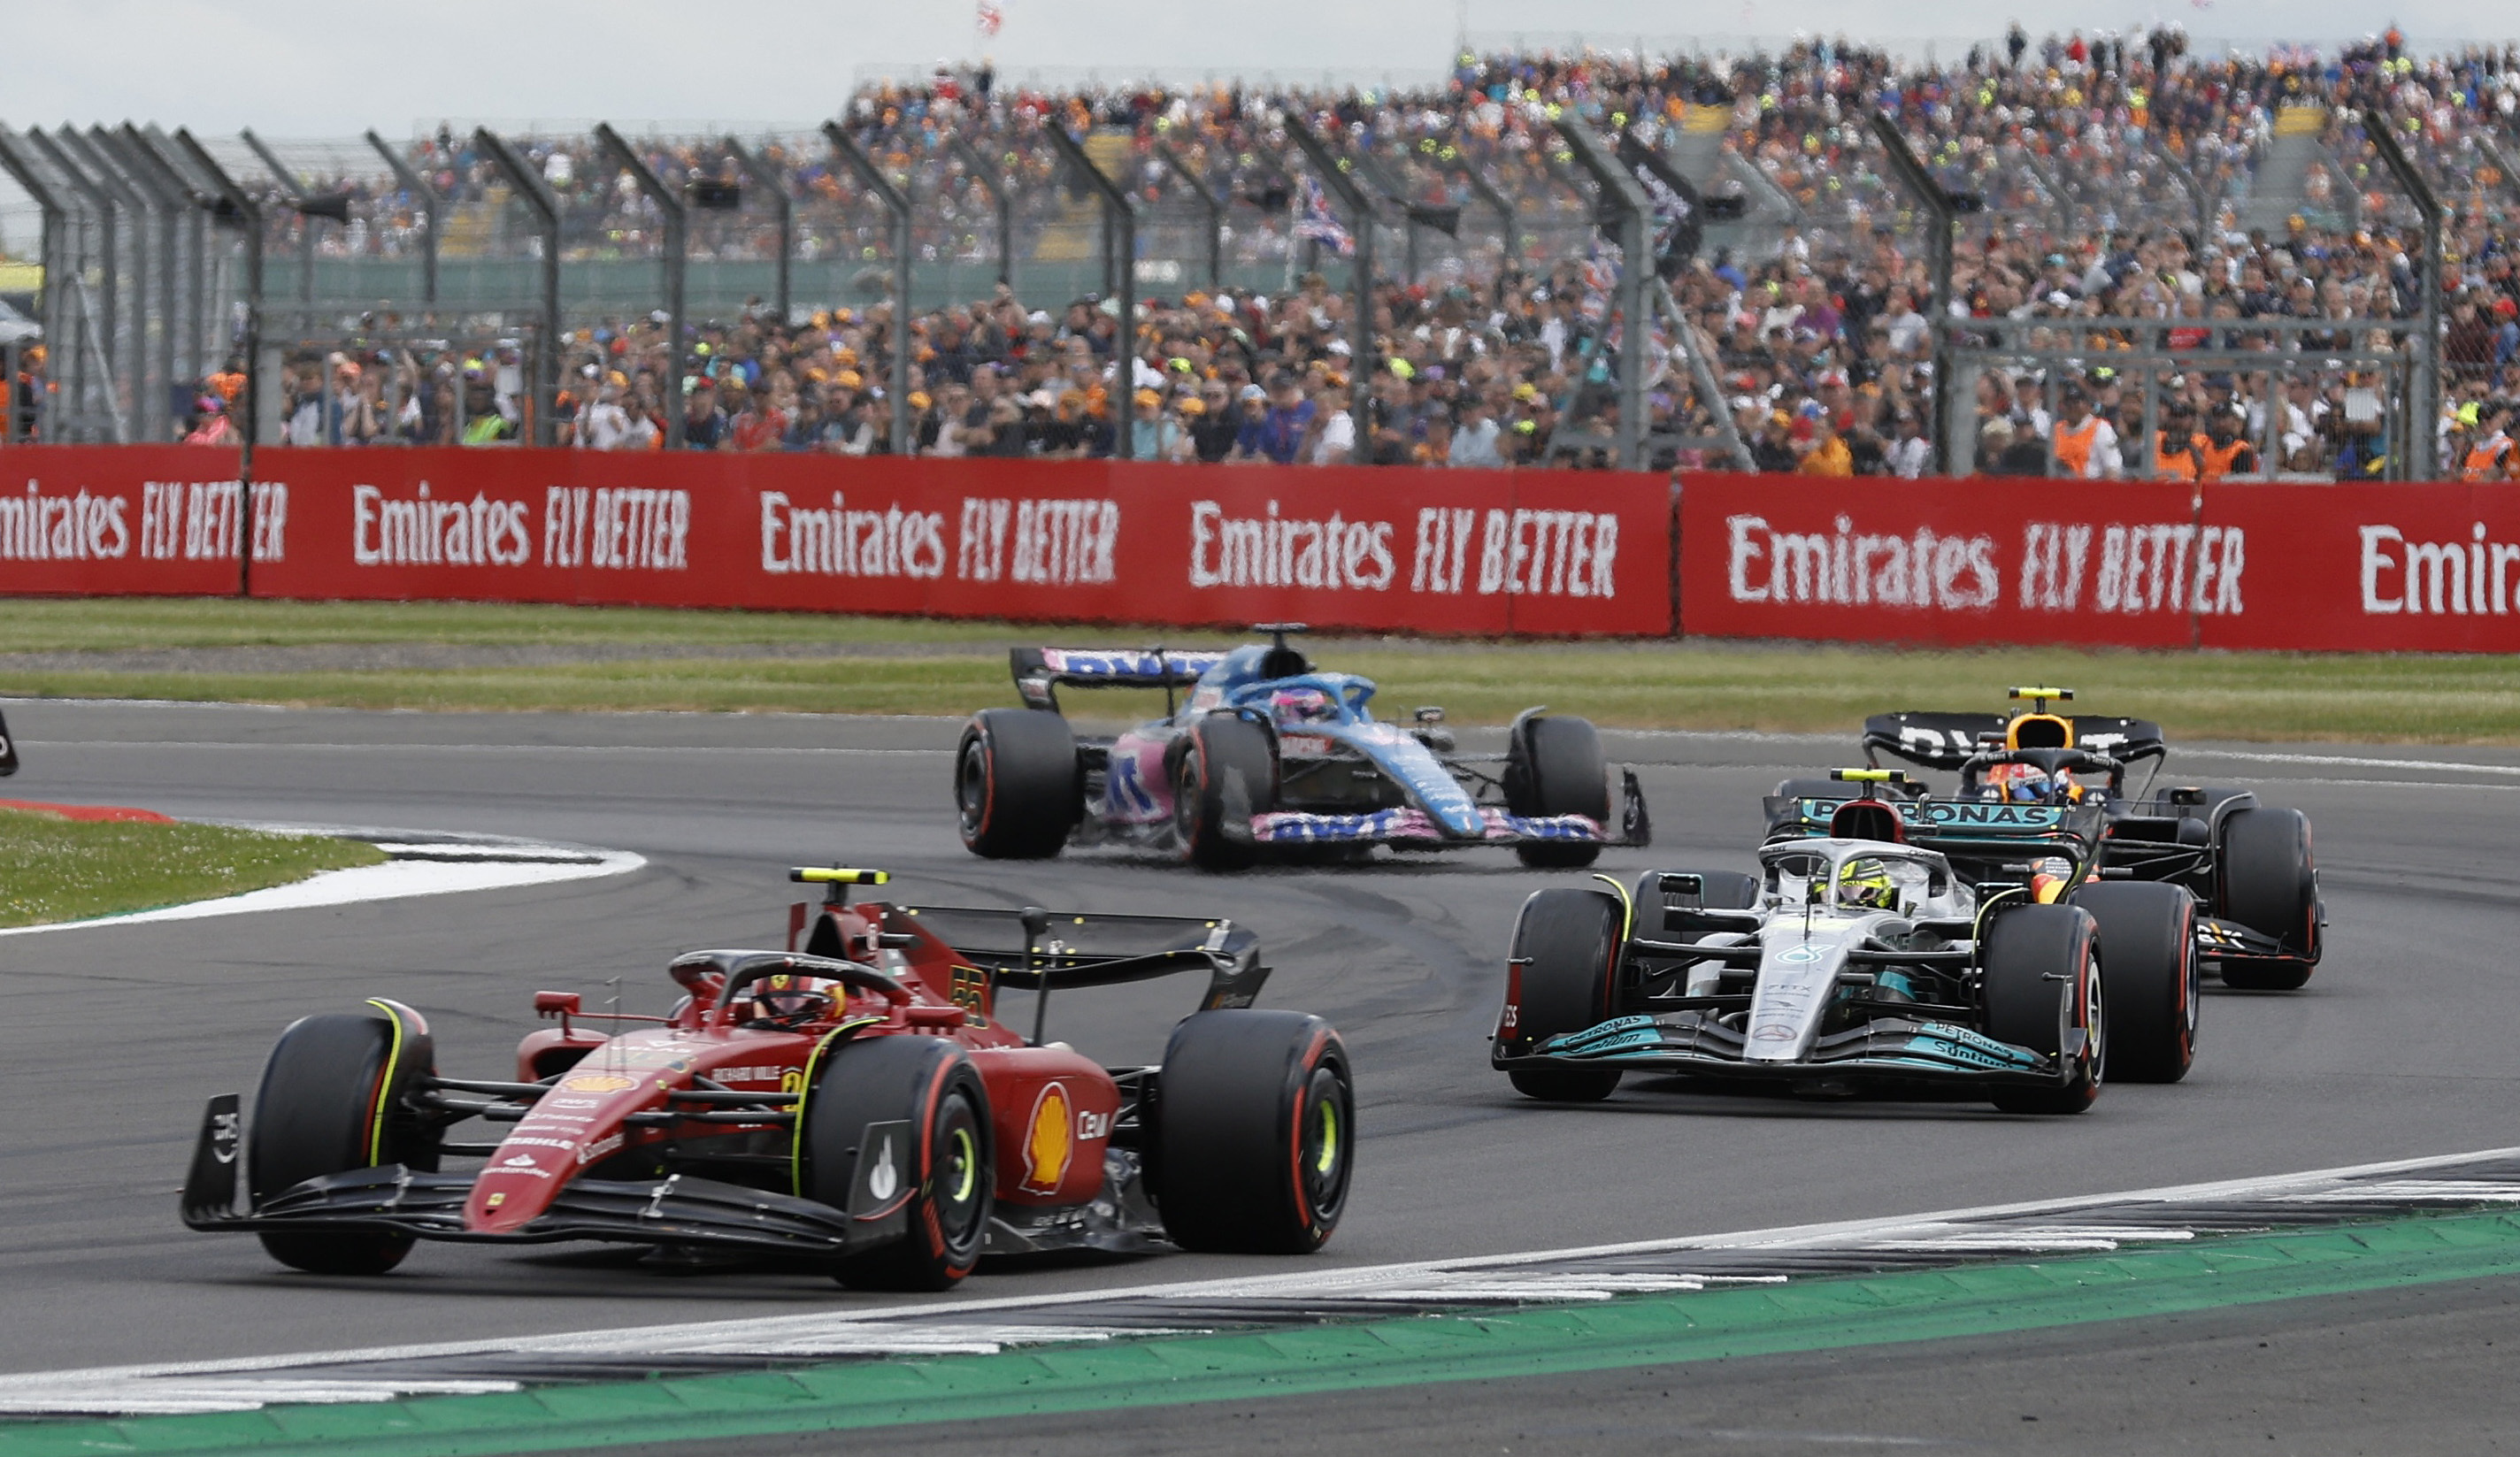 Charles Leclerc, Carlos Sainz, Lewis Hamilton y Checo Pérez protagonizaron una brutal lucha por el podio en el final del GP de Gran Bretaña  (Foto: REUTERS/Peter Cziborra)